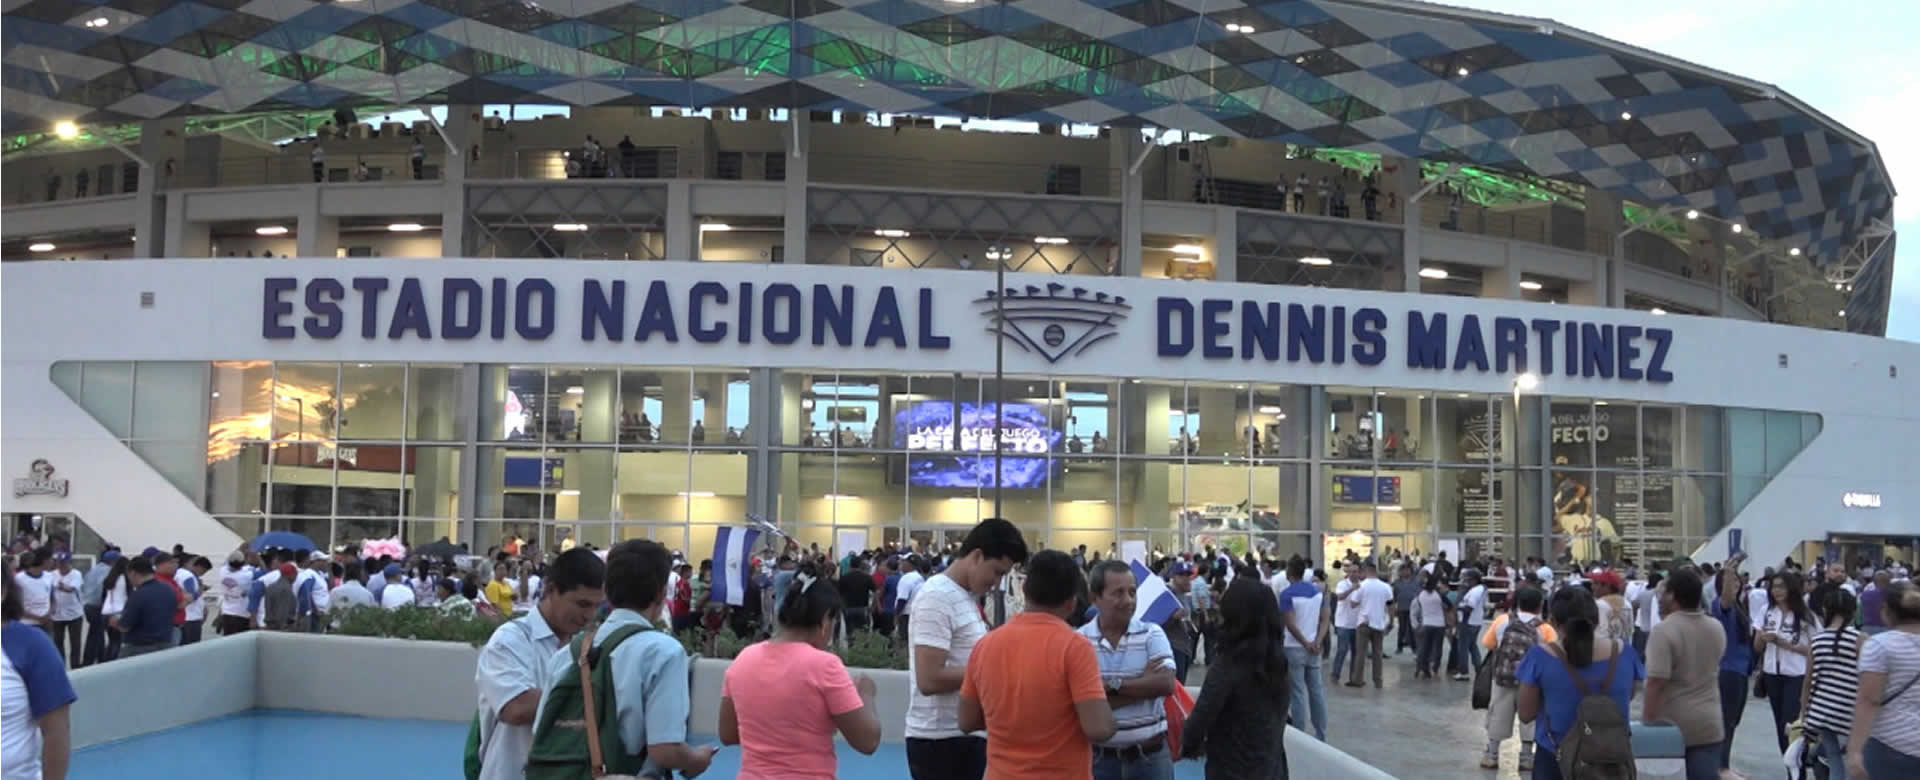 Personalidades públicas nicaragüenses asistieron al primer juego en el nuevo Estadio Dennis Martínez